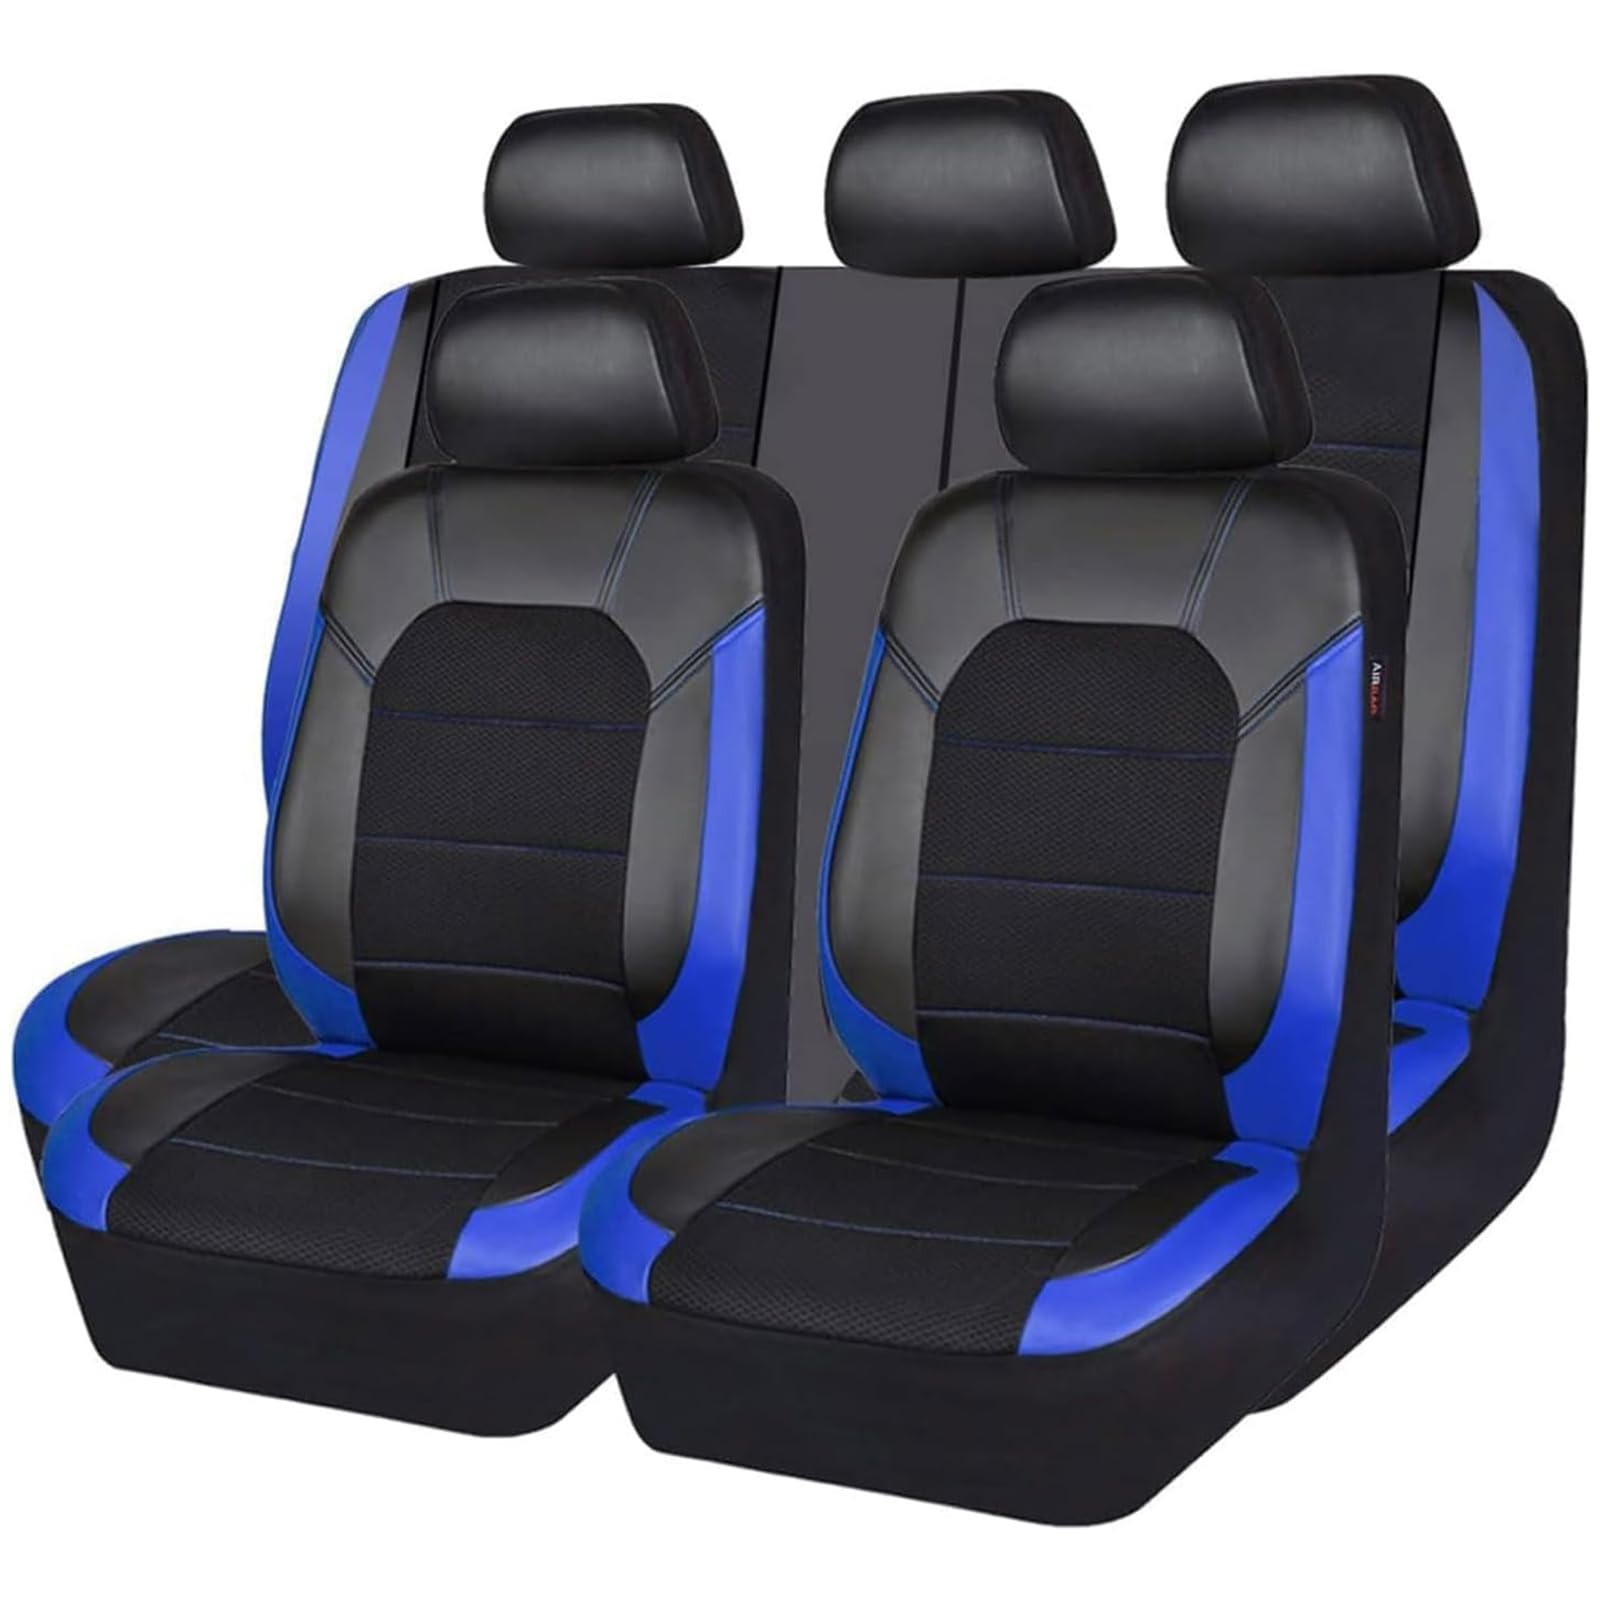 ZXAJDWNU Auto Leder Sitzbezüge Sets Für Hyundai Kona EV 2019 2020 2021 2022, 5 Sitze Allwetter Vorne Und Hinten Komfortabler Atmungsaktiv Sitzbezüge Sitzschoner Innenraum Zubehör,D/Blue von ZXAJDWNU